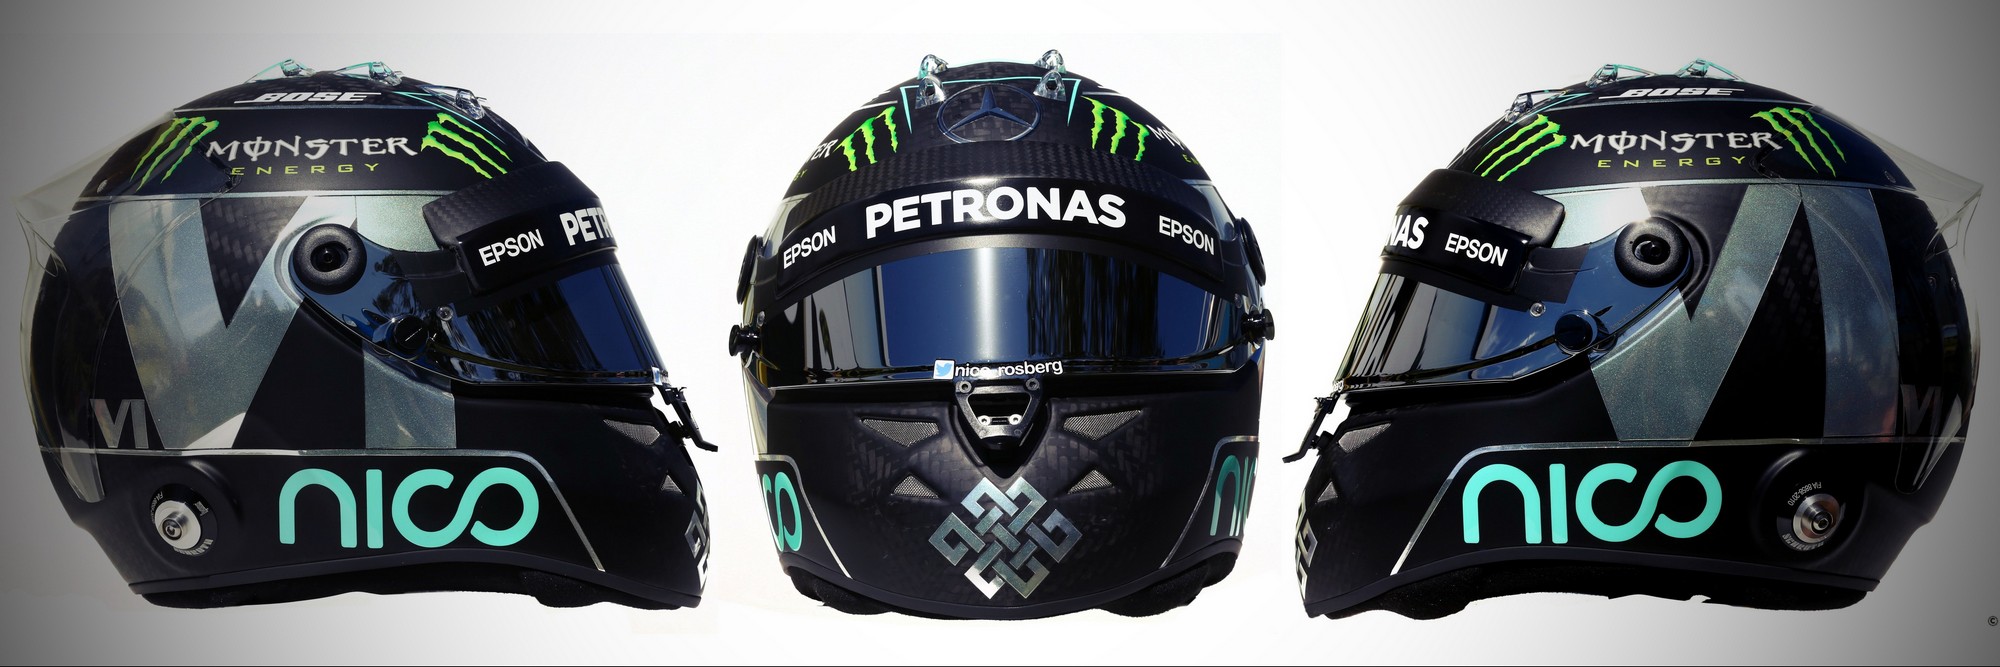 Шлем Нико Росберга на сезон 2016 года | 2016 helmet of Nico Rosberg